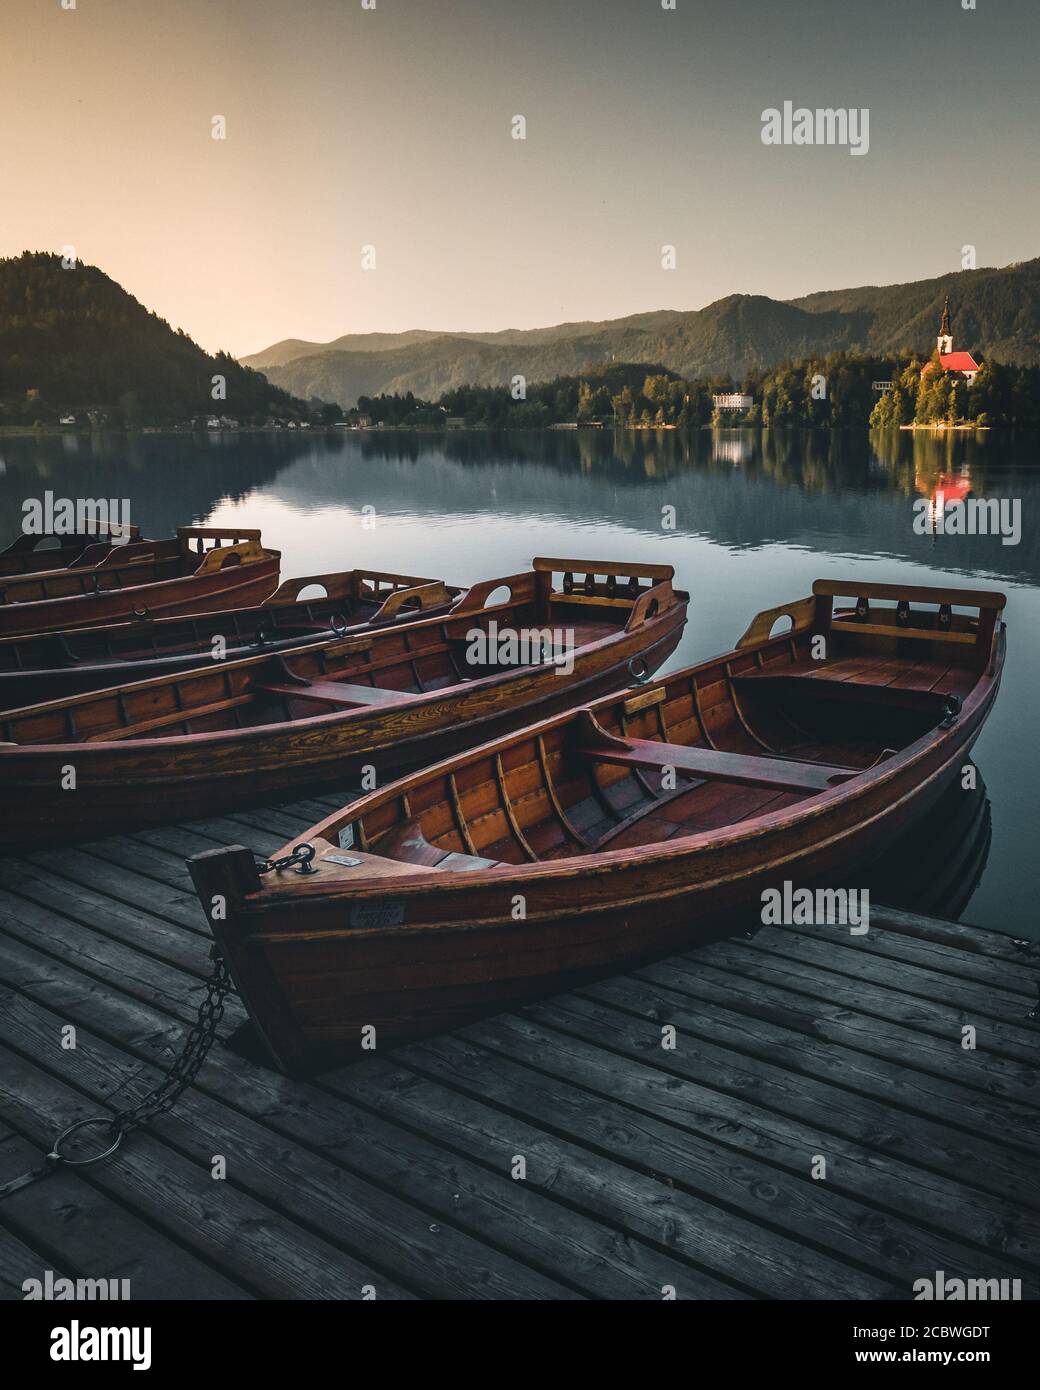 Boote am See blutete slowenien im Sommer Sonnenuntergang - Urlaub Querformat Stockfoto